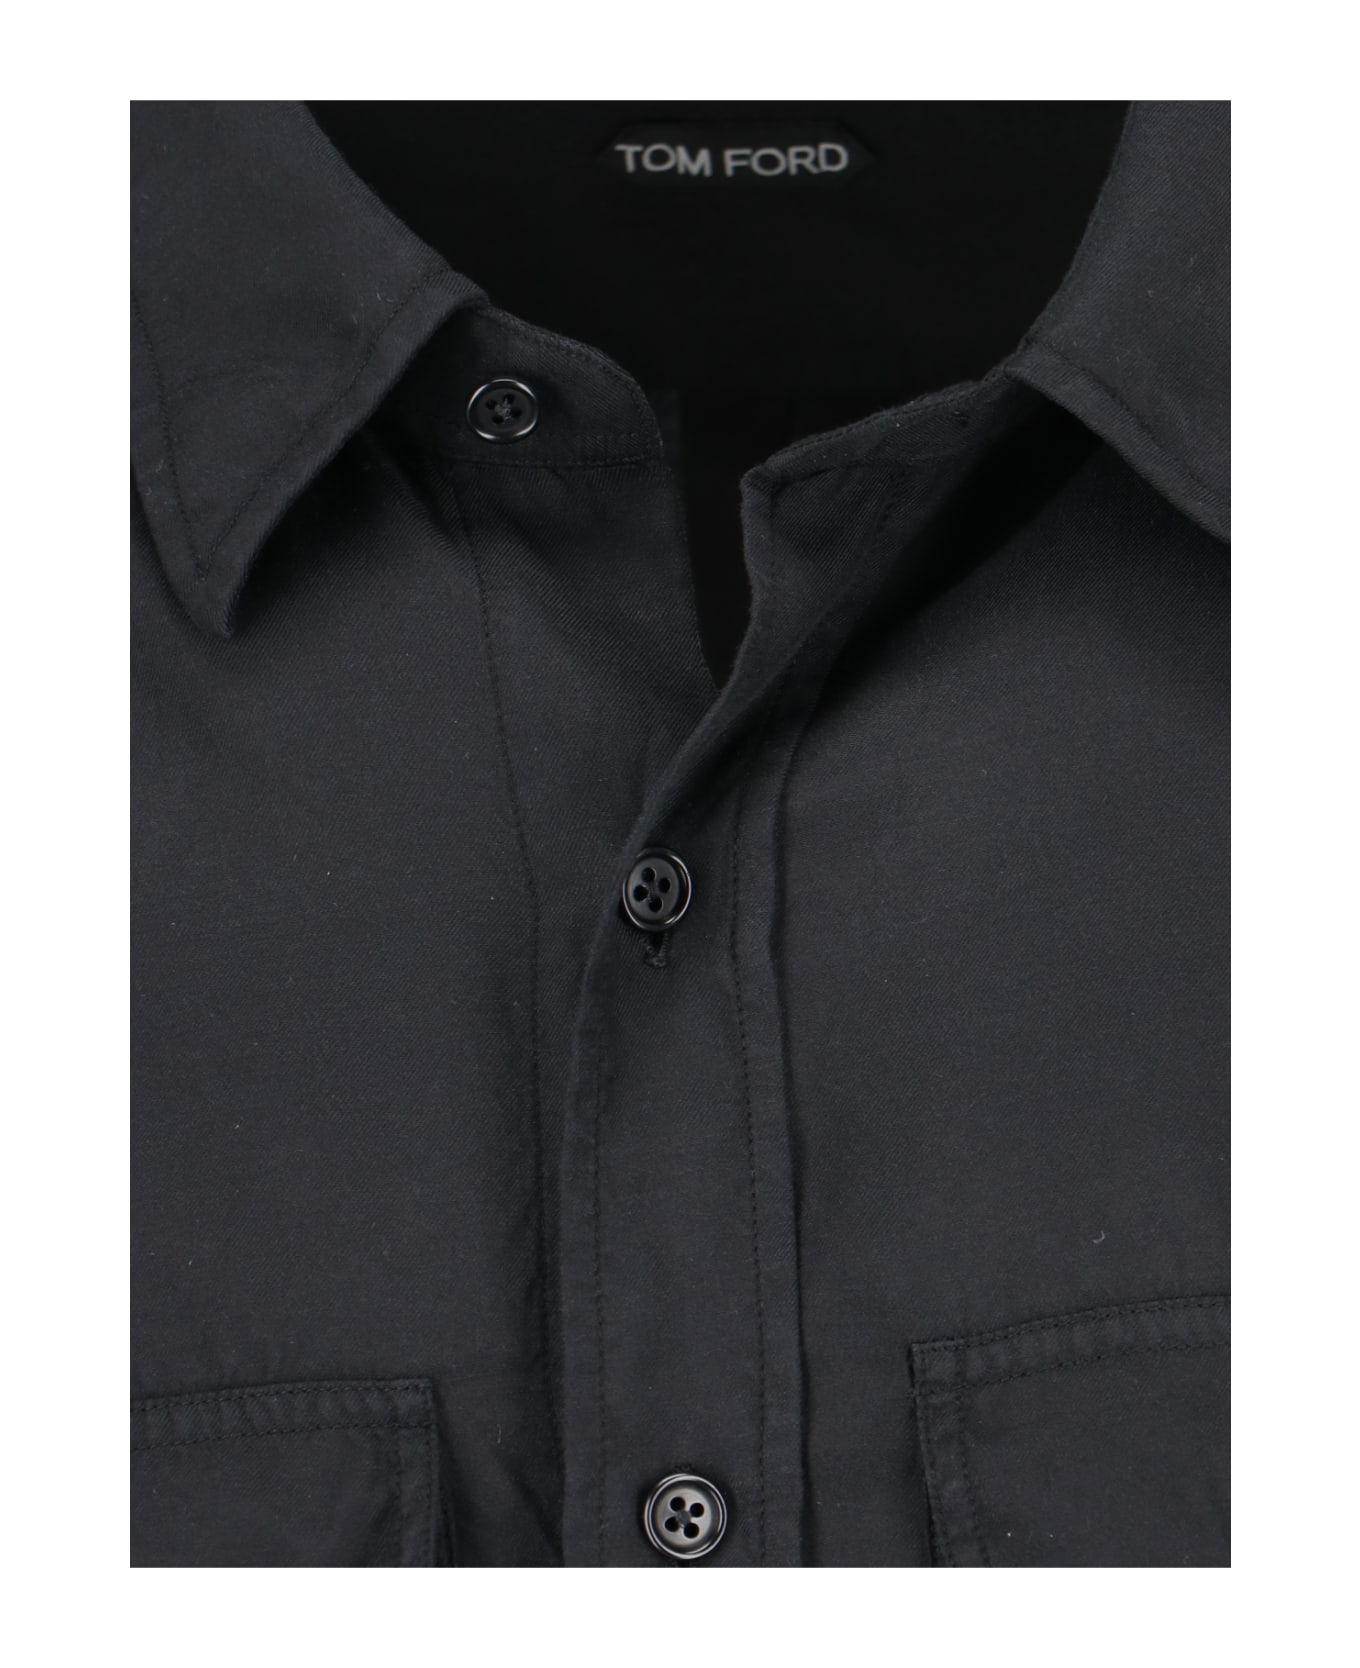 Tom Ford Shirt - Black